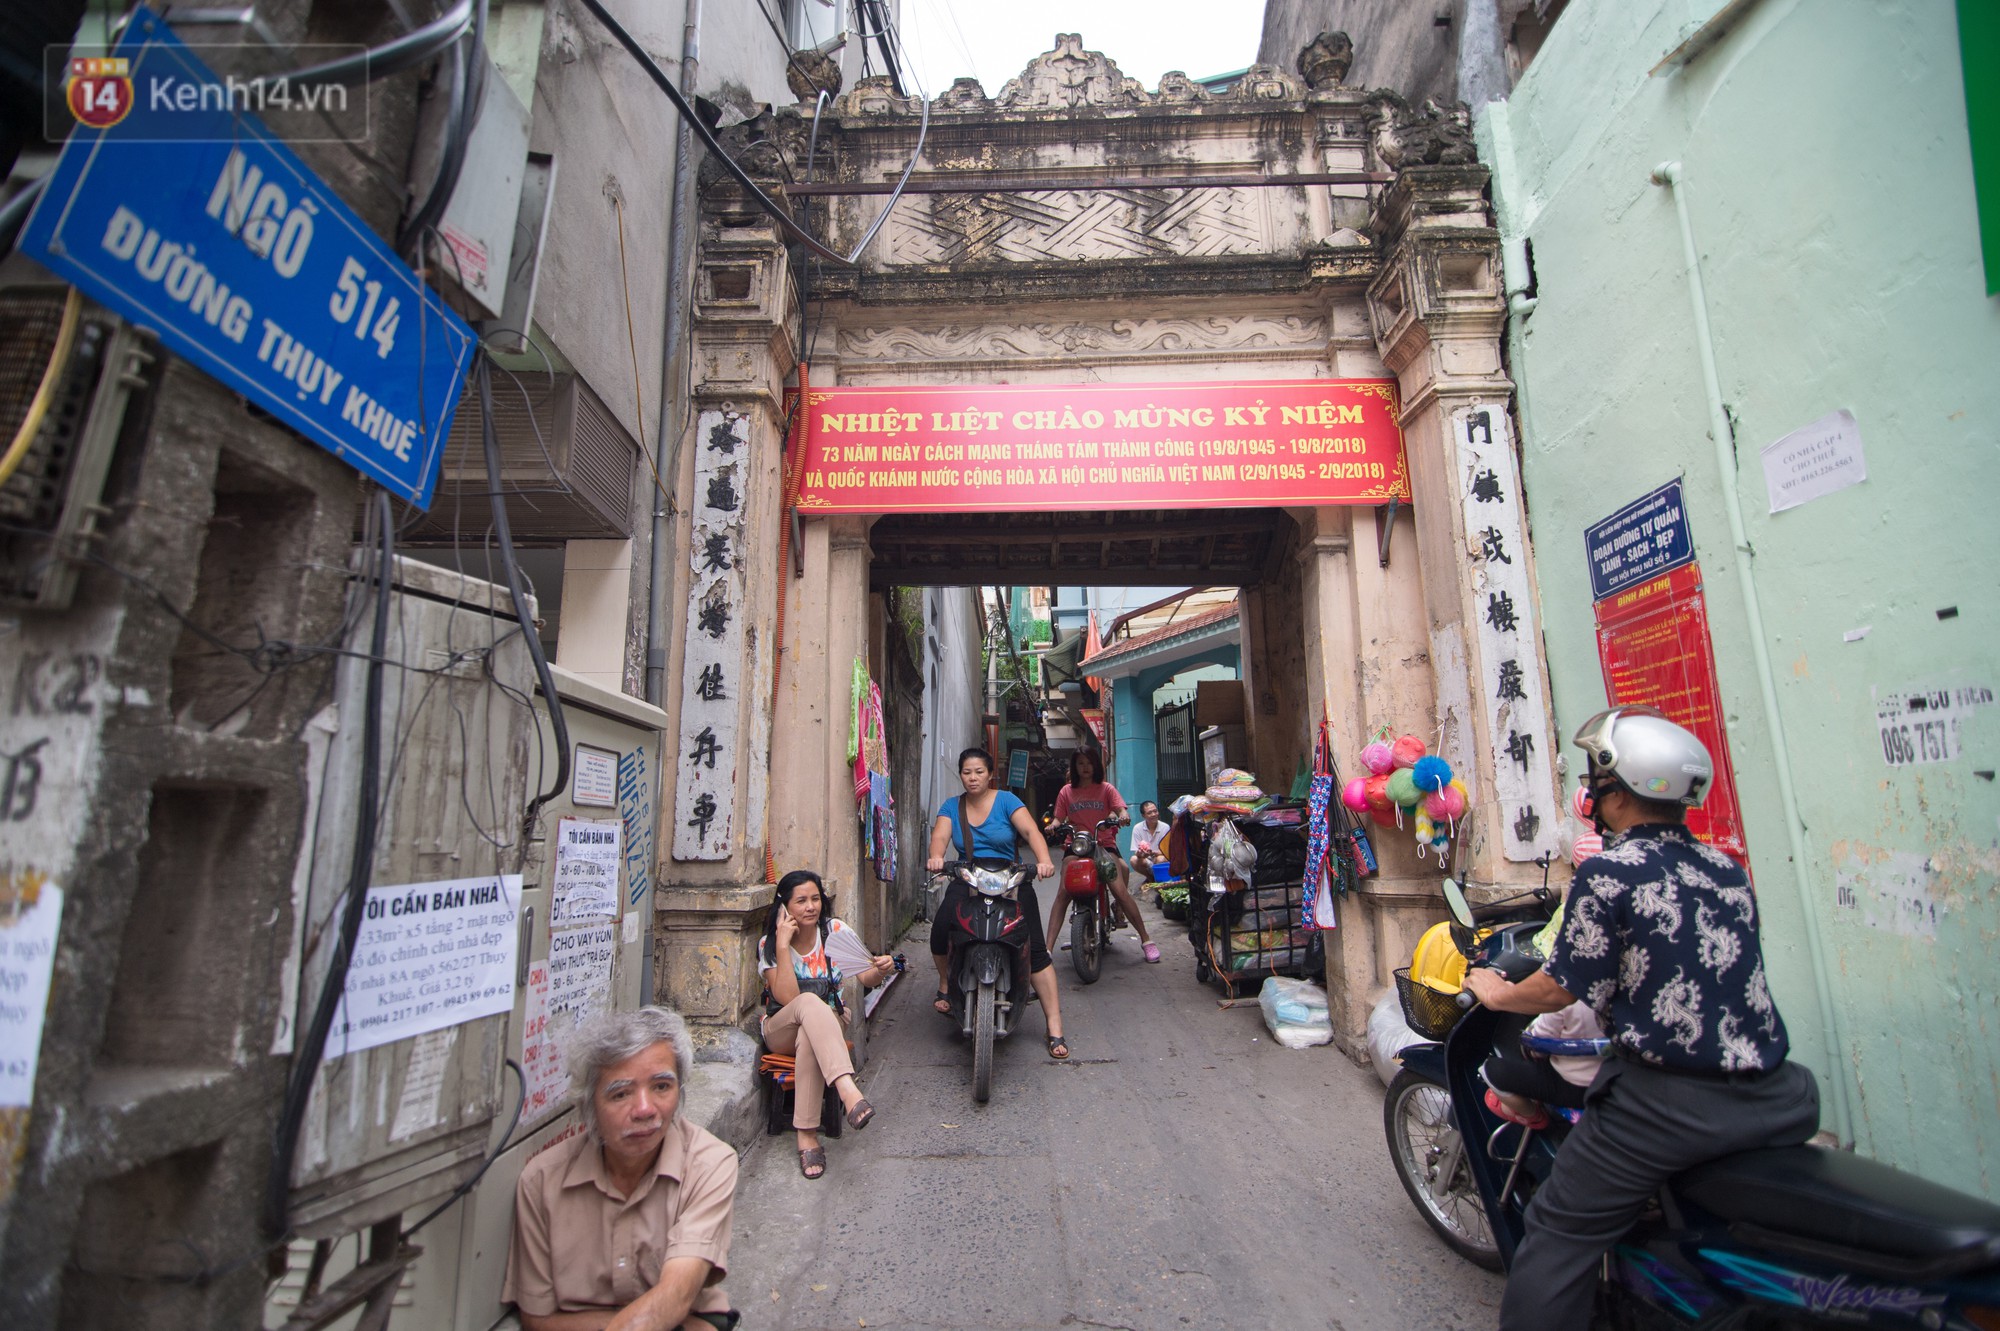 Chuyện về một con phố có nhiều cổng làng nhất Hà Nội: Đưa chân qua cổng phải tôn trọng nếp làng - Ảnh 6.